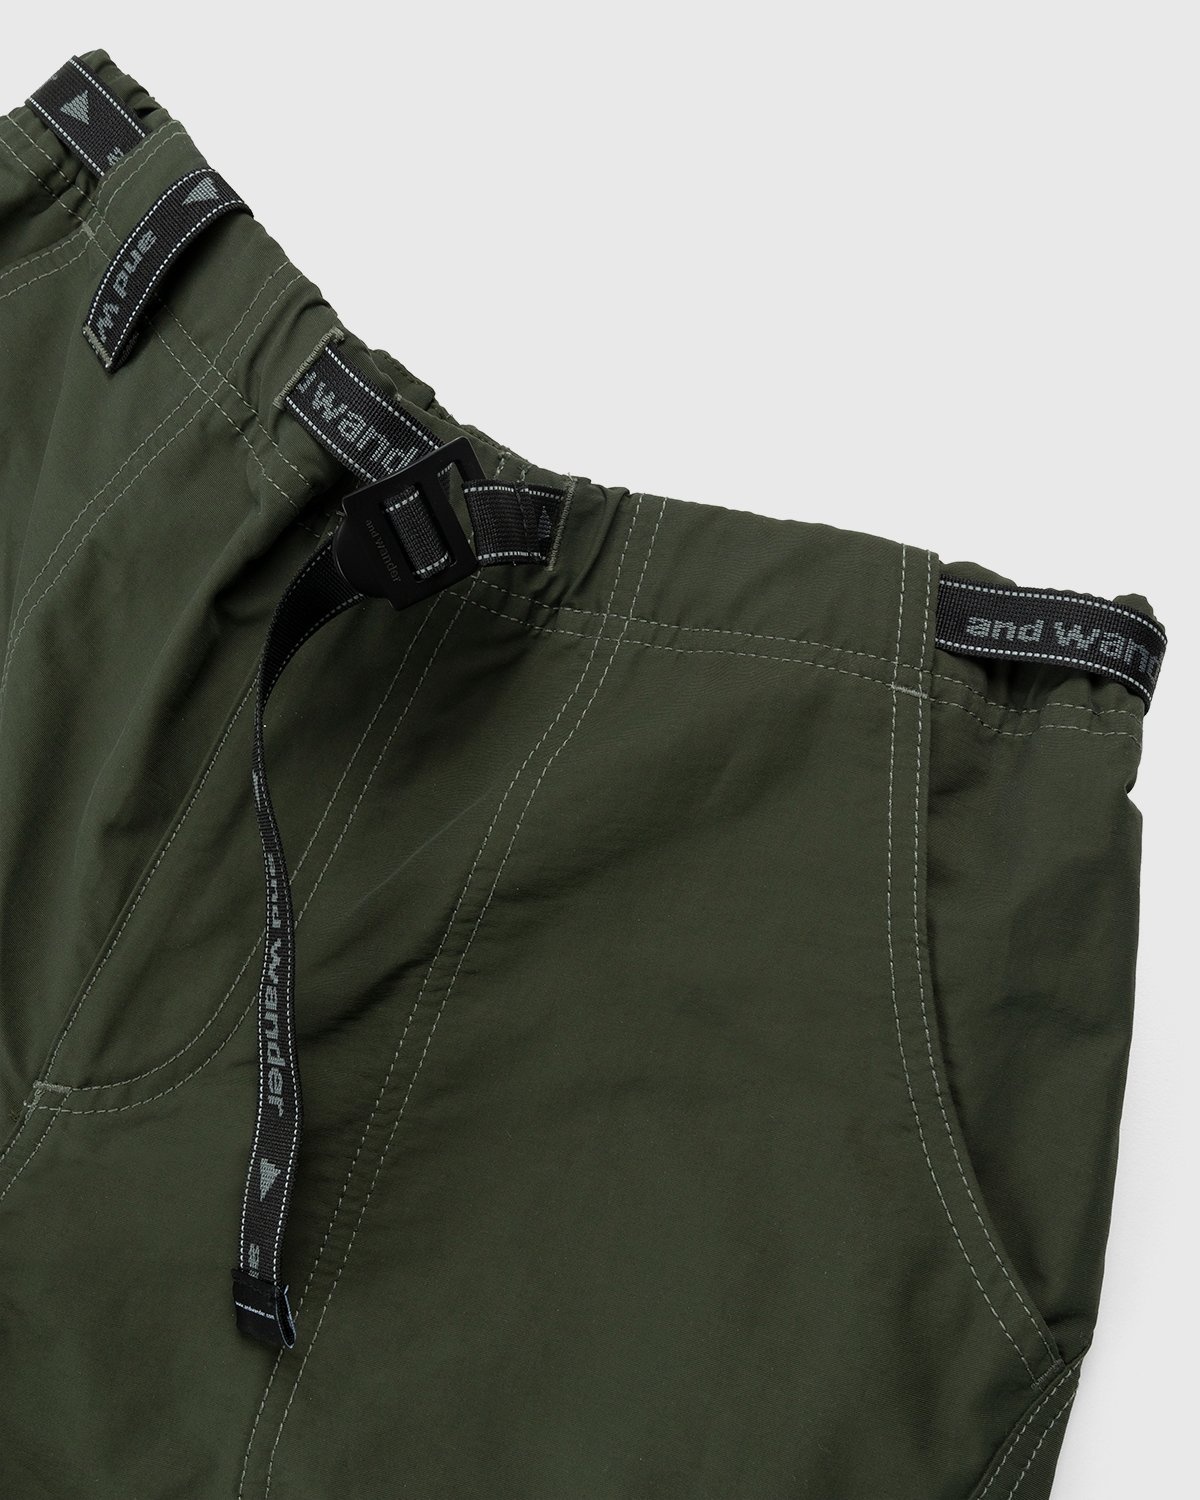 And Wander – 60/40 Cloth Shorts Khaki - Active Shorts - Green - Image 4